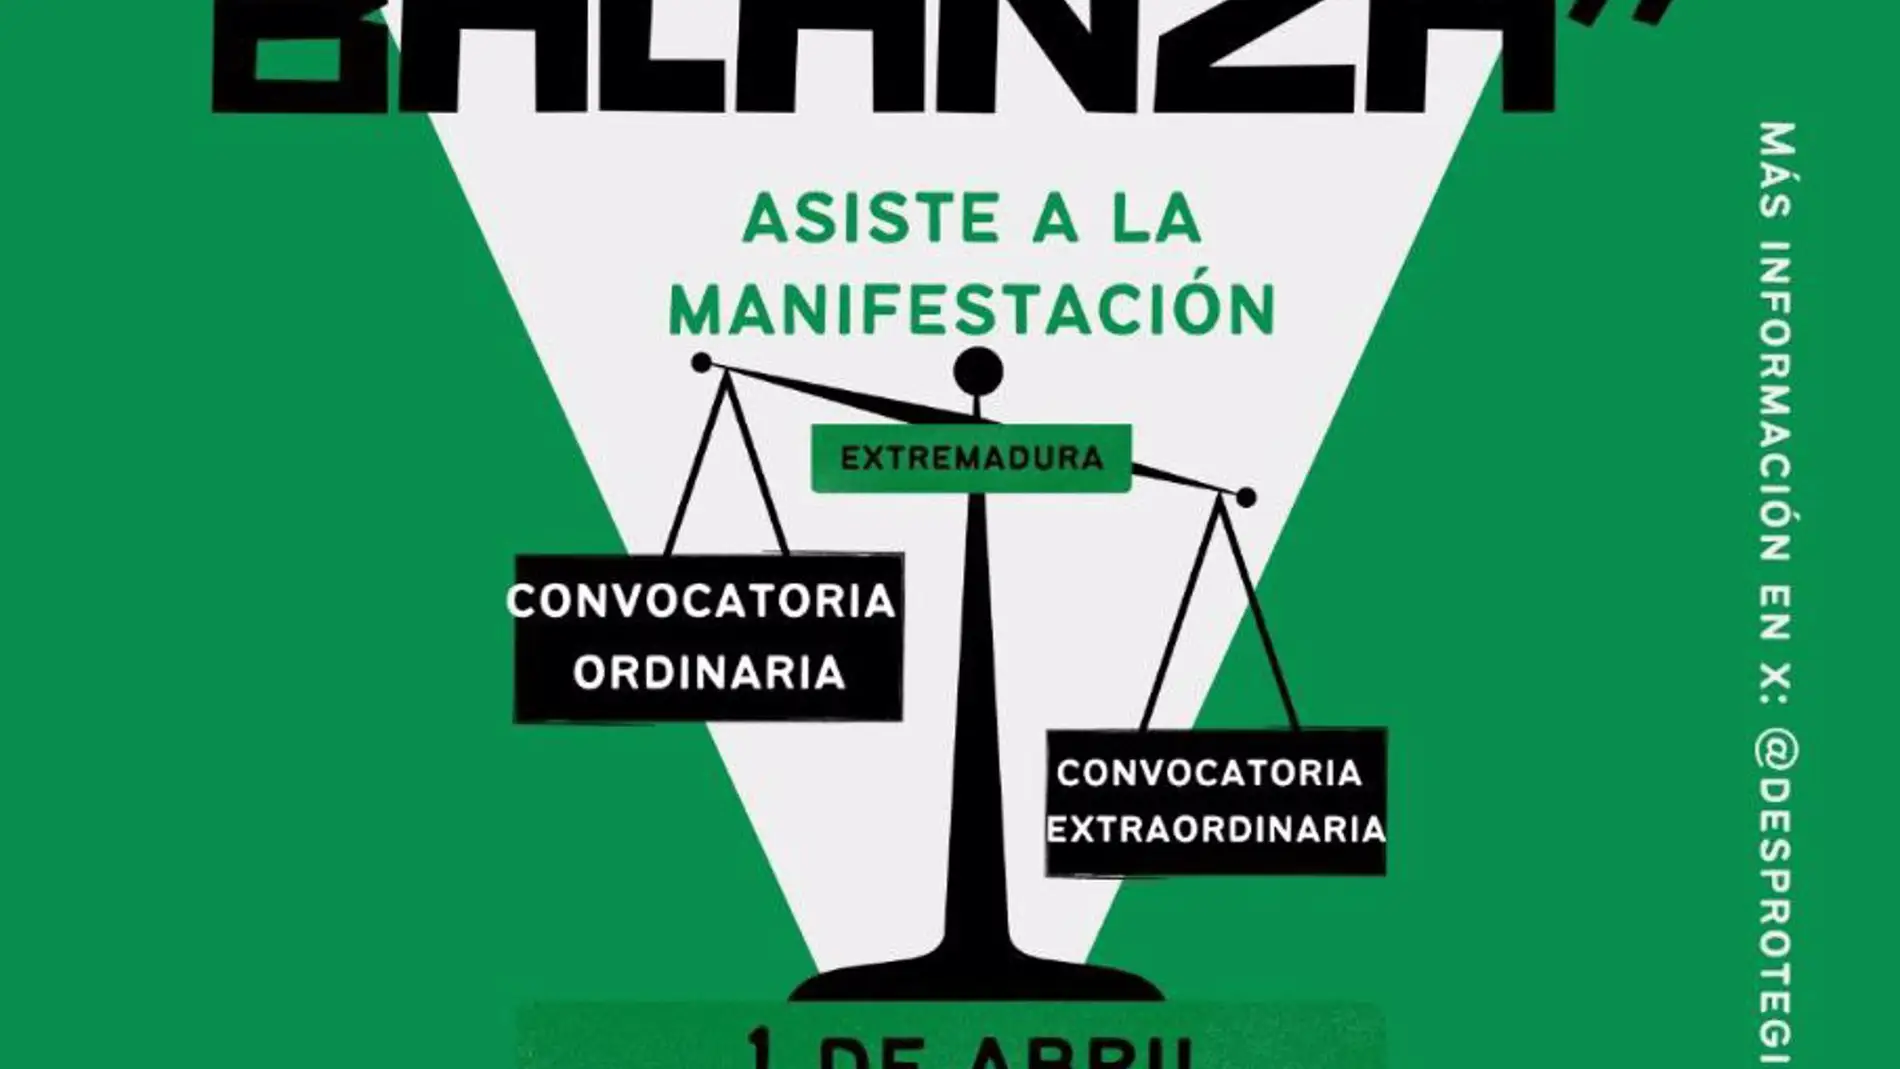 Interinos docentes se manifestarán el lunes 1 de abril en Mérida para pedir unas oposiciones de estabilización "justas"